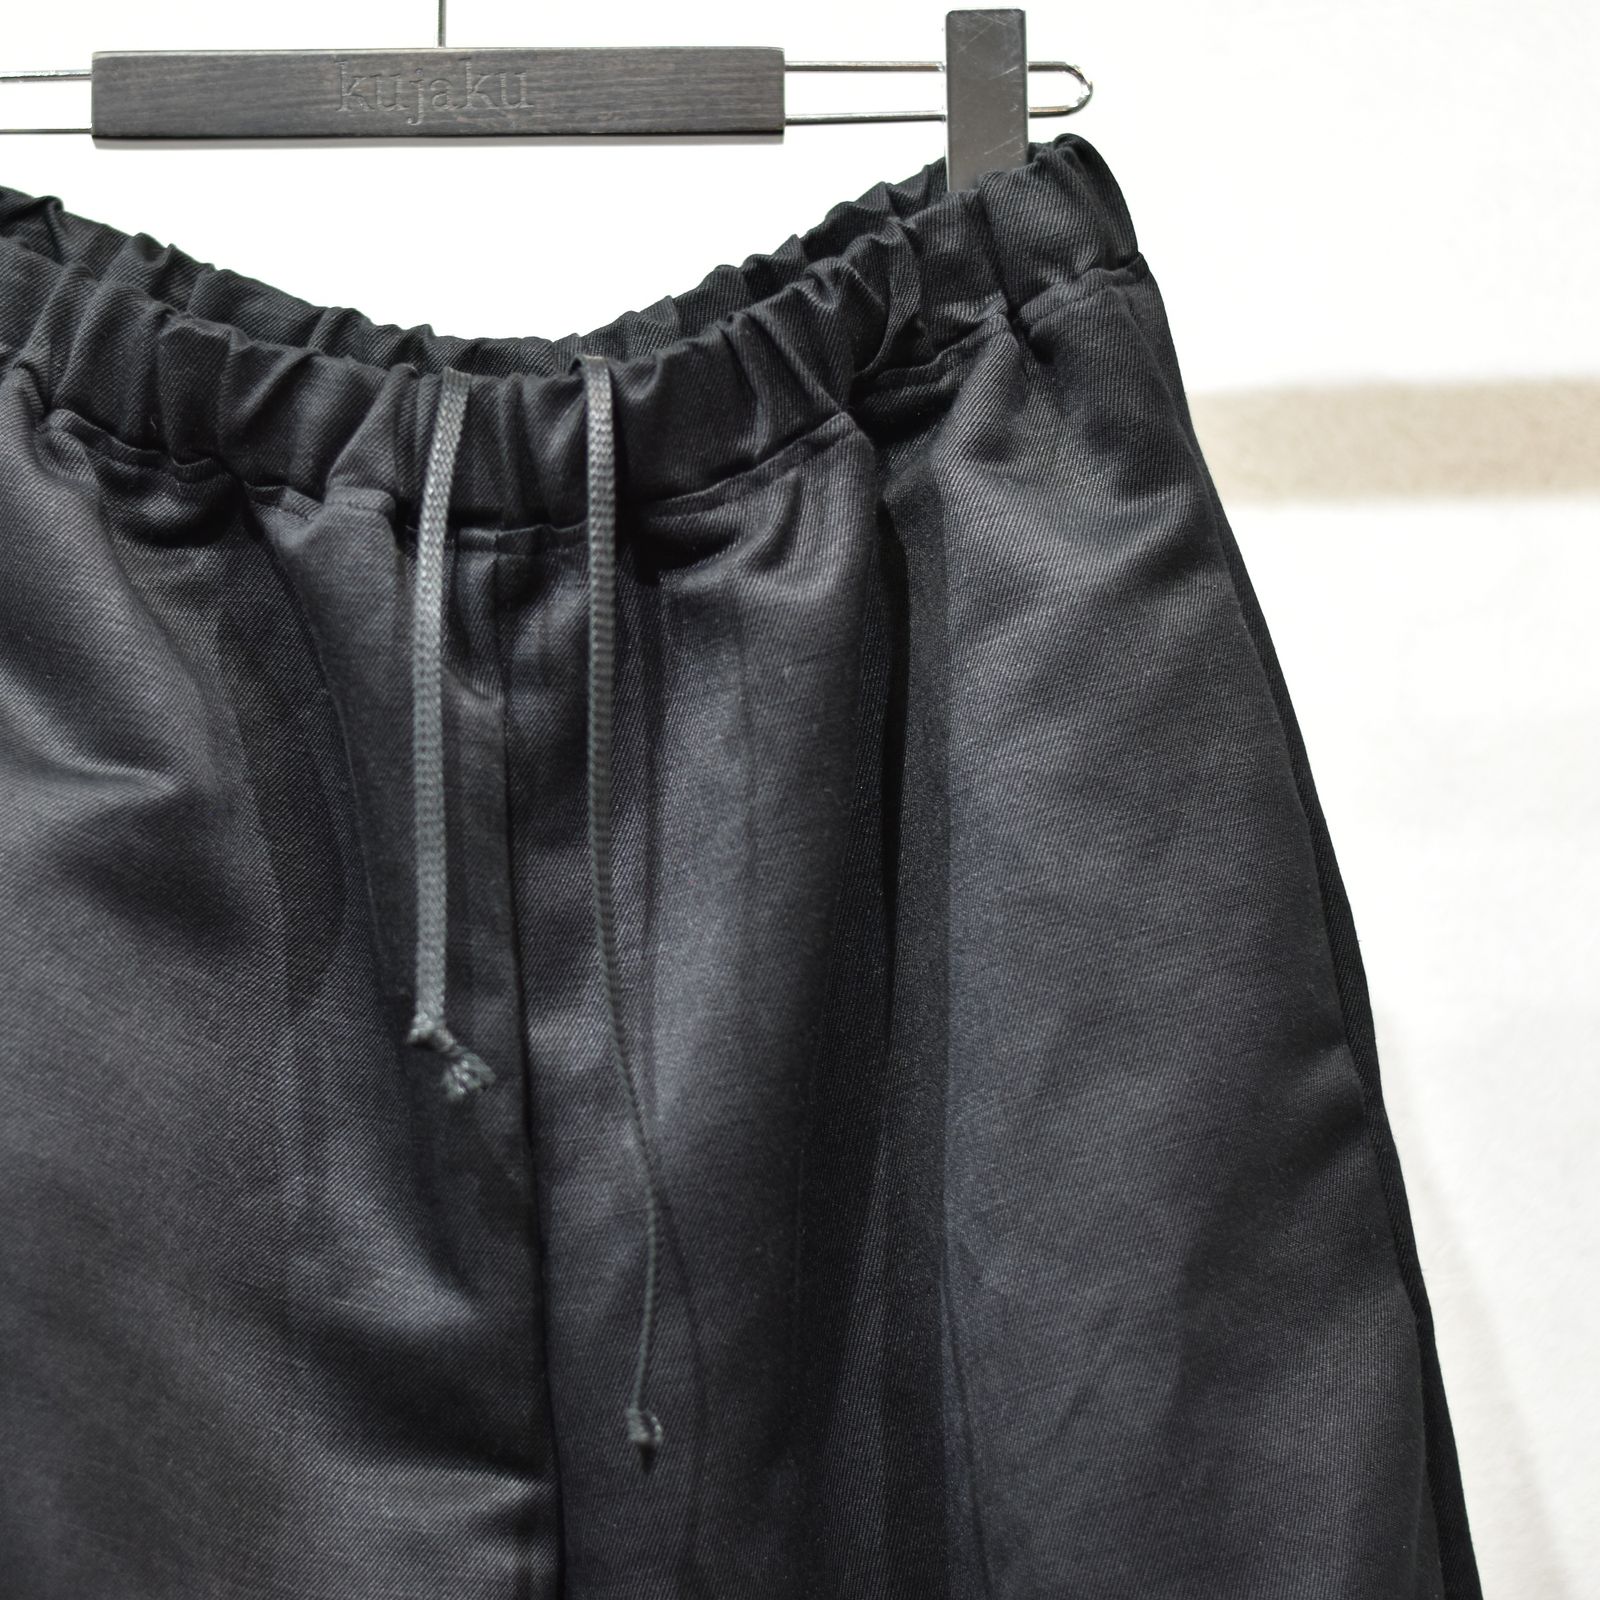 kujaku - dokeshi pants (black) / 道化師パンツ | chord online store